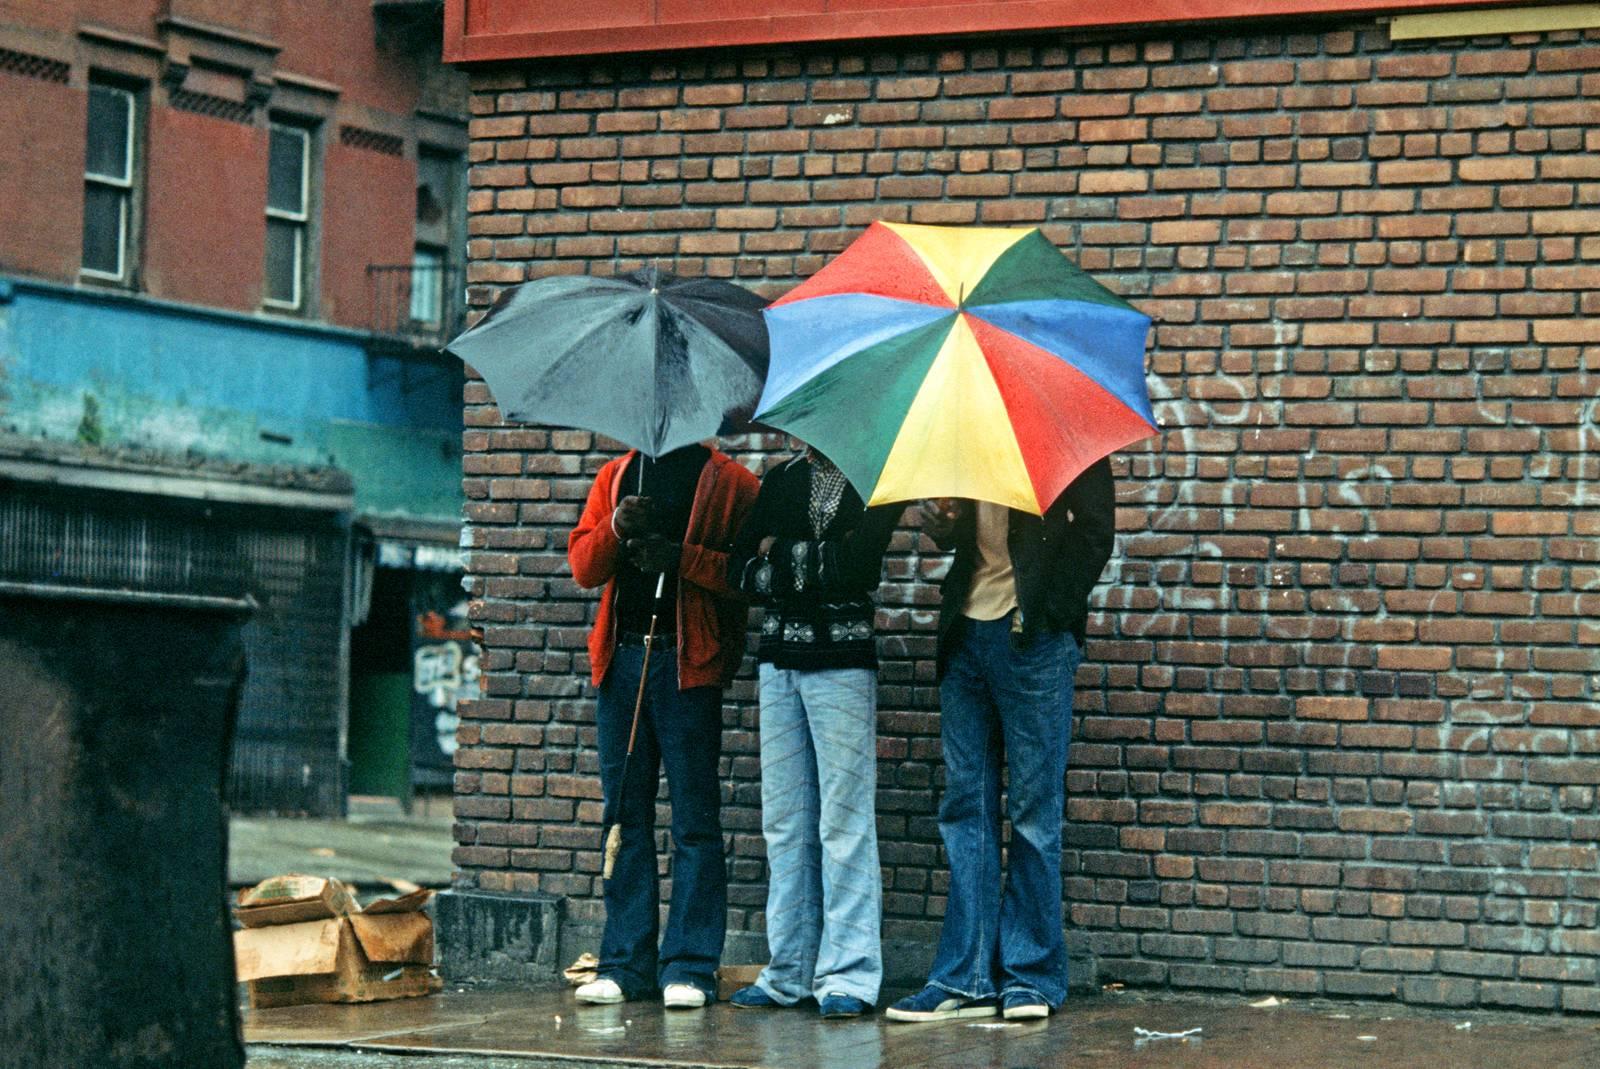 Alain Le Garsmeur Landscape Photograph – Harlem Umbrellas